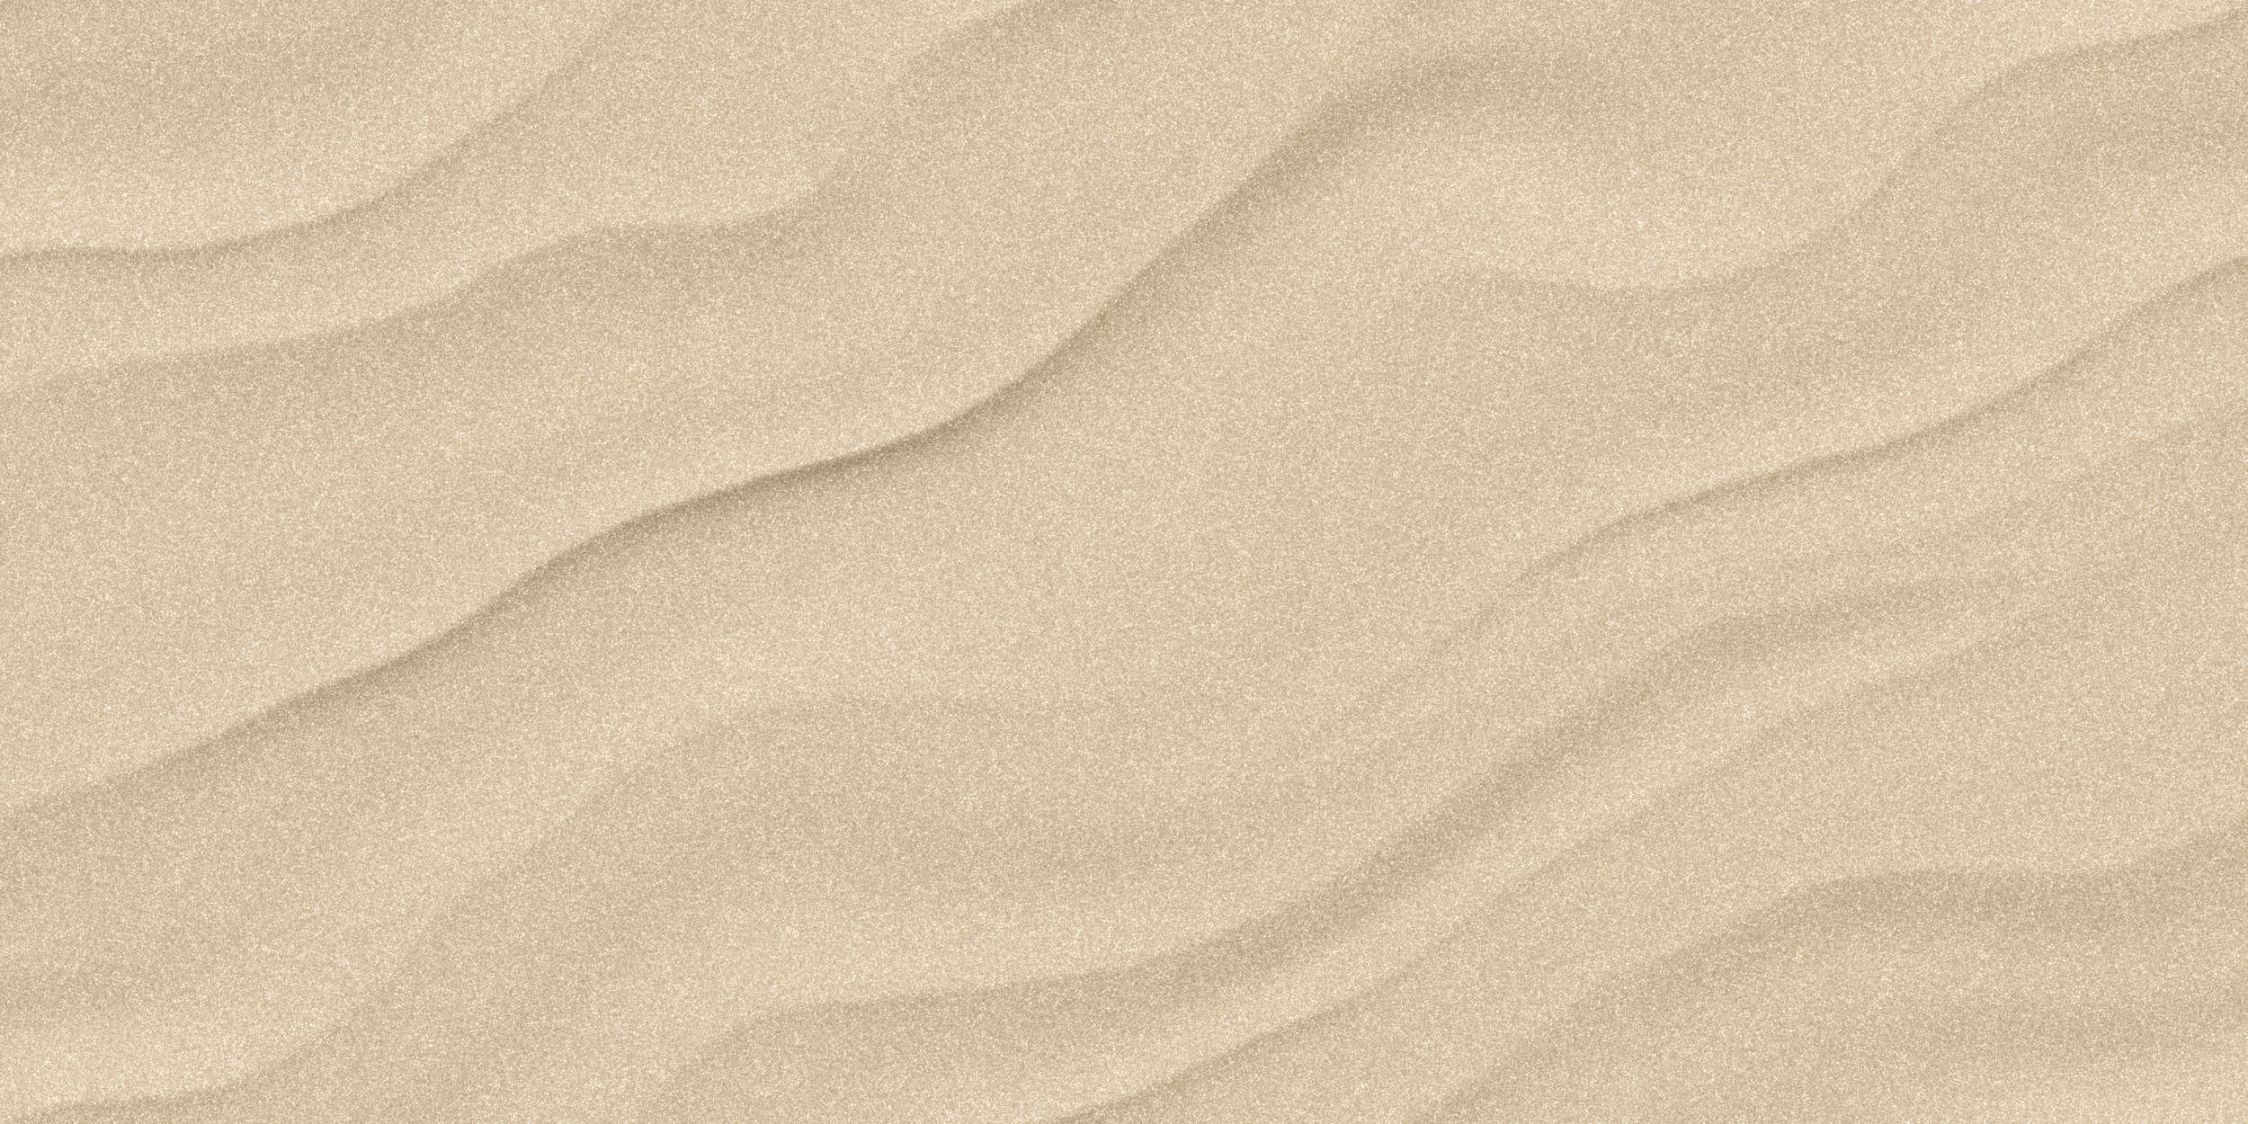             Fotomurali »sahara« - Pavimento sabbioso del deserto con aspetto di carta fatta a mano - Materiali non tessuto leggermente strutturato
        